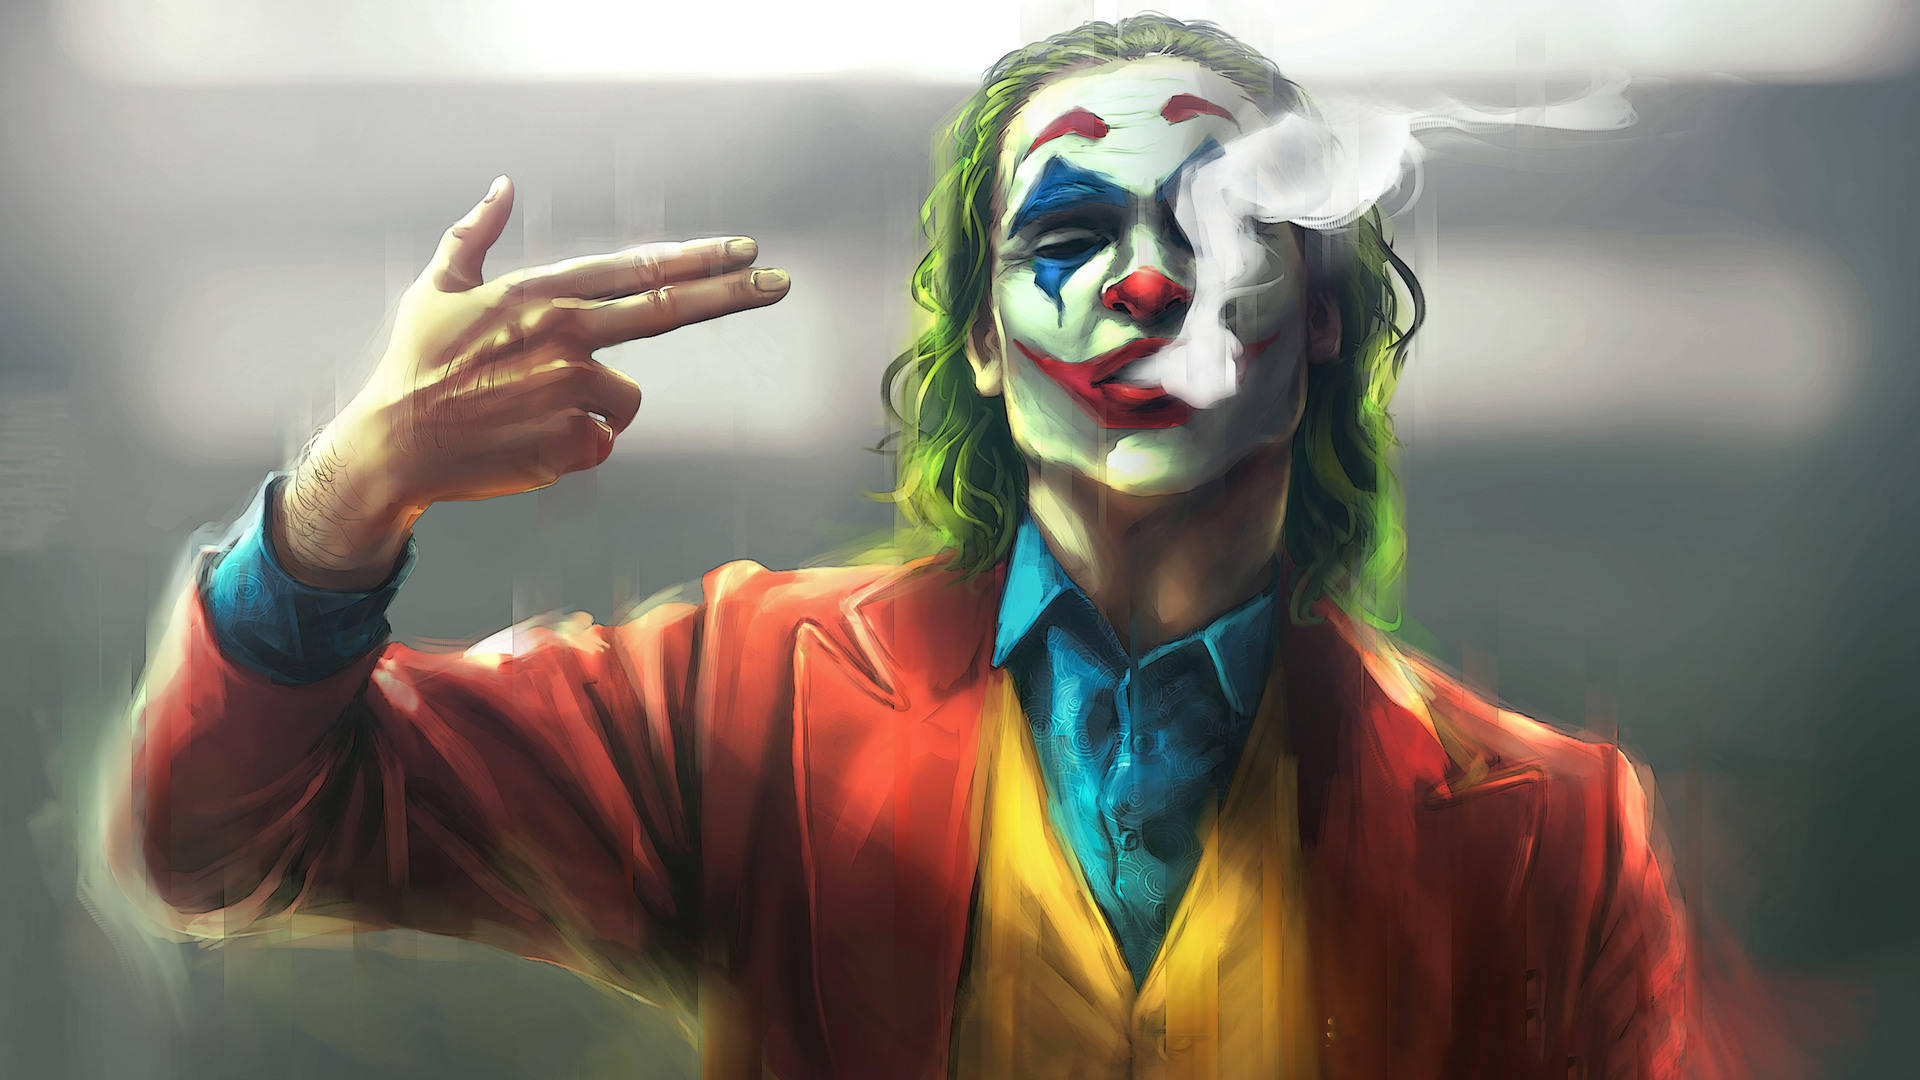 Cool Picture Joker Art Wallpaper